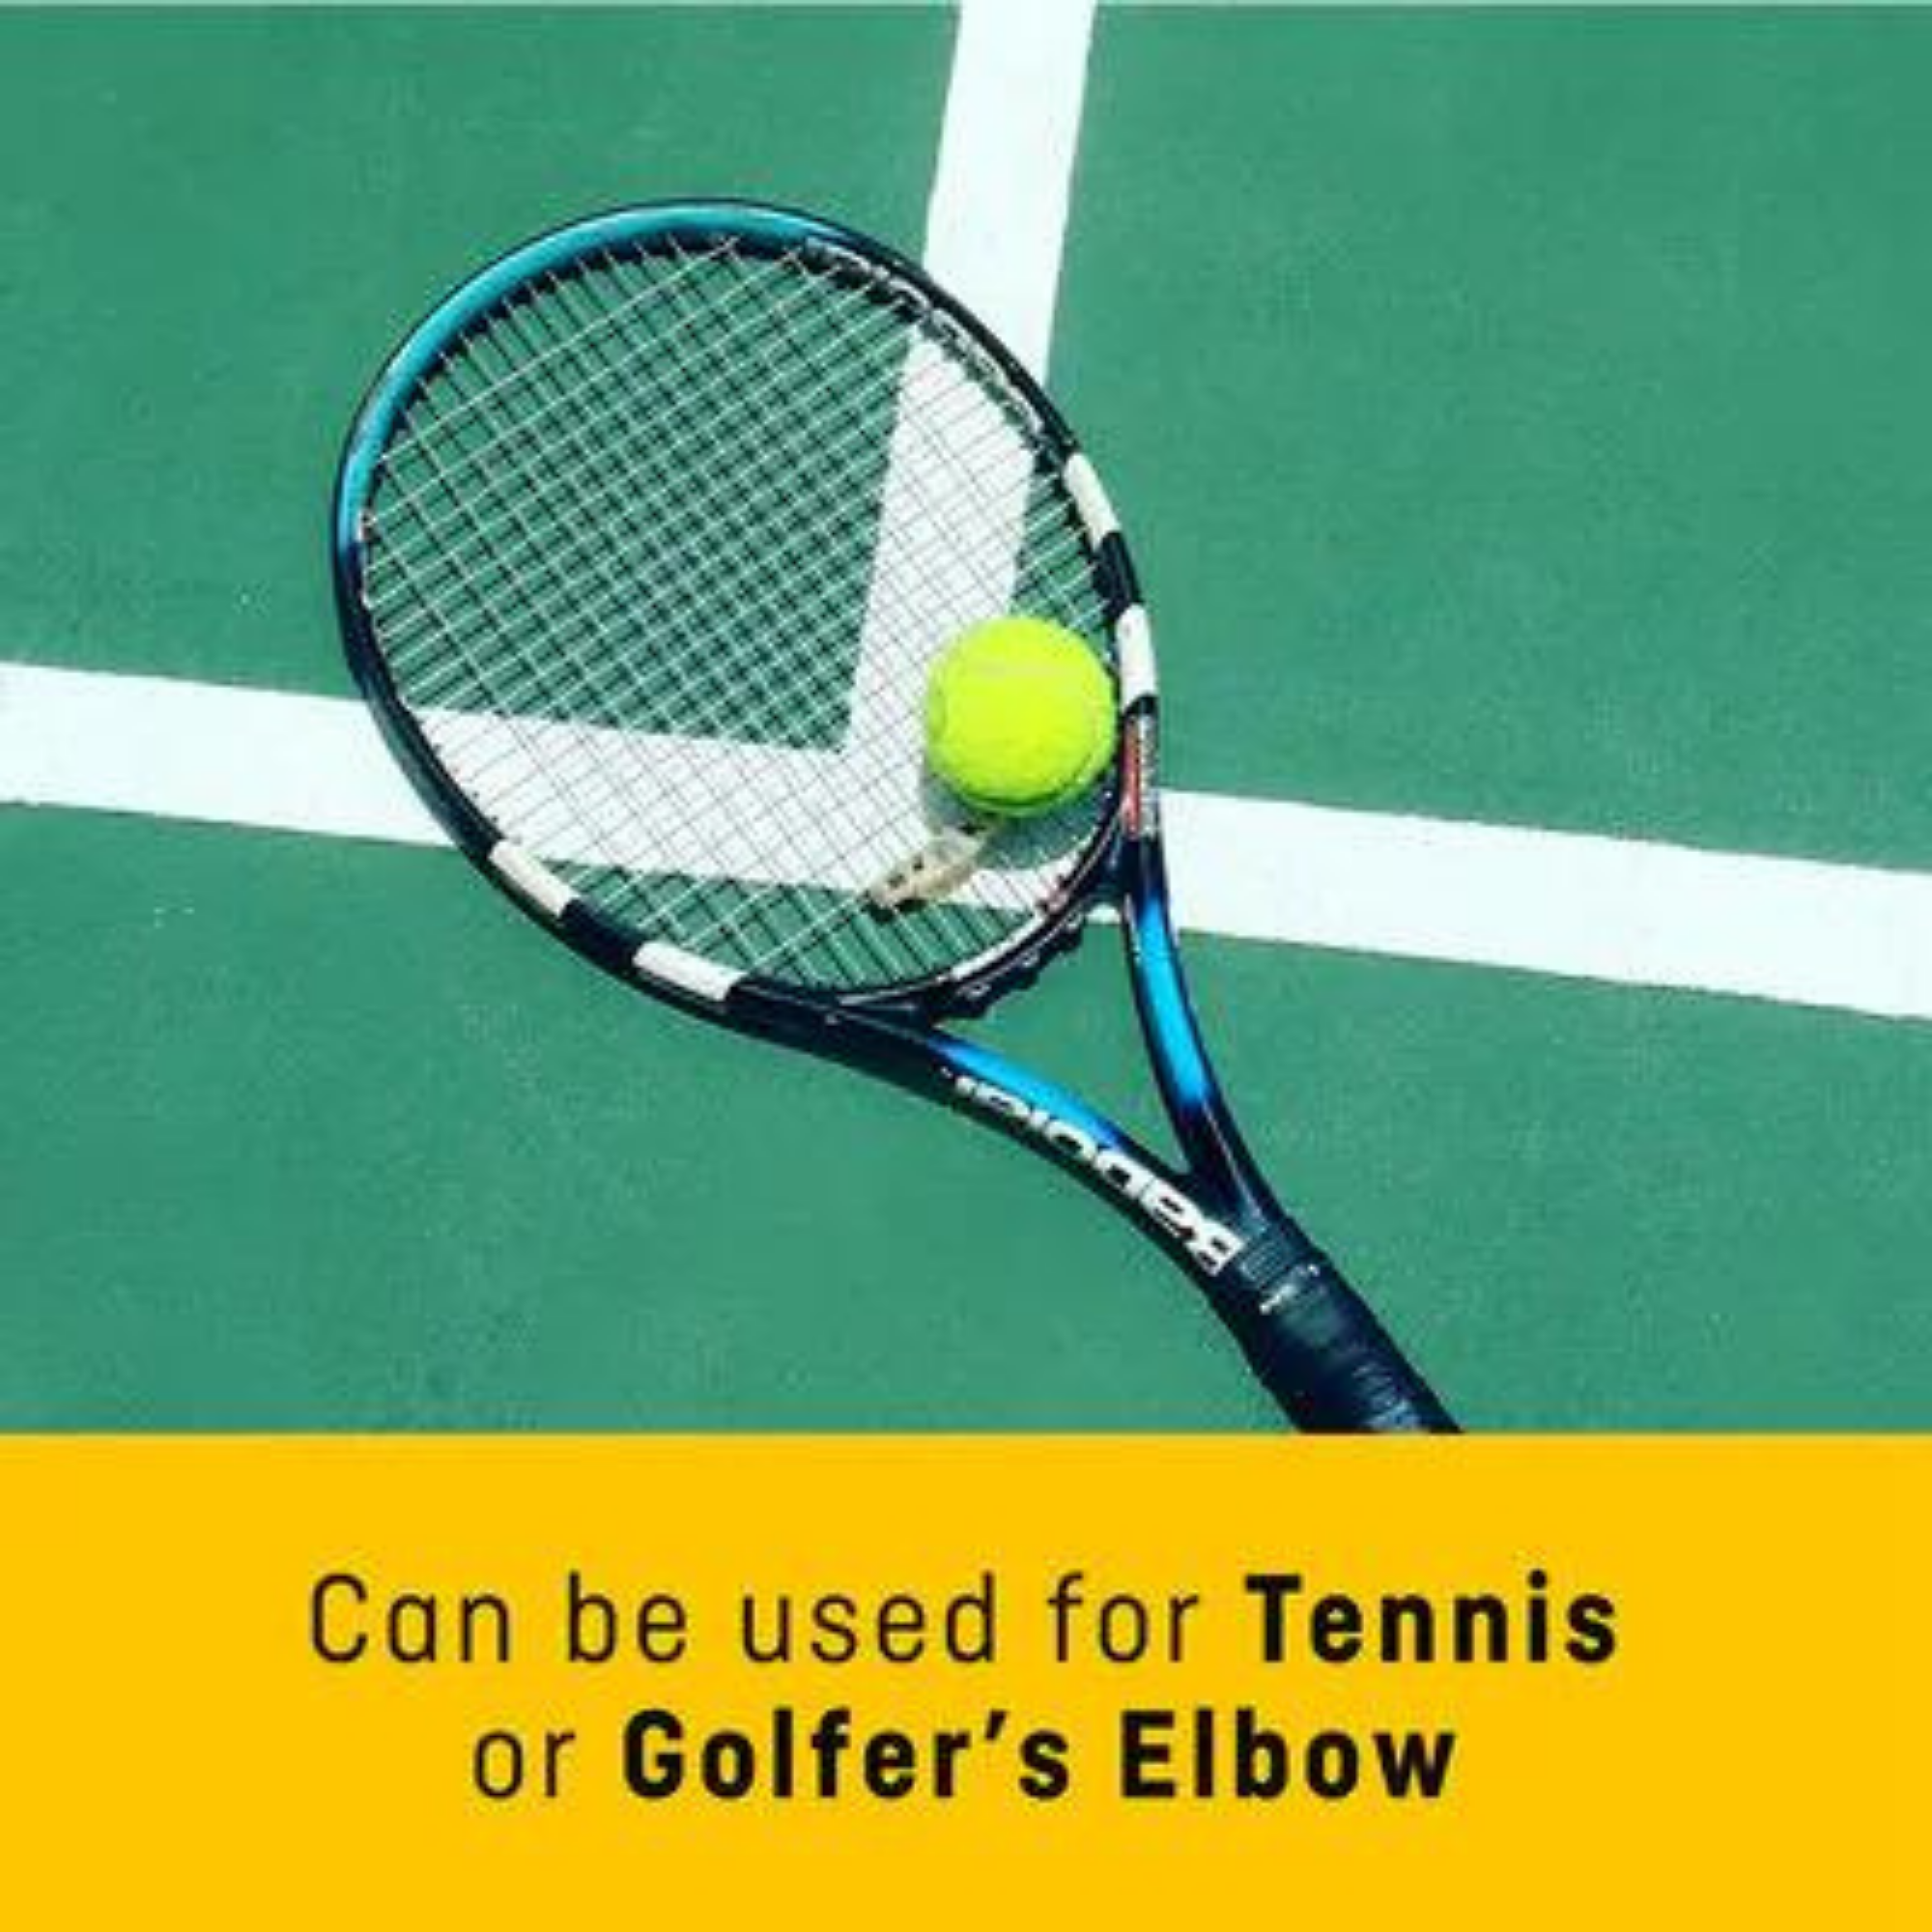 Futuro Tennis Elbow Strap 45975ENR Adjustable